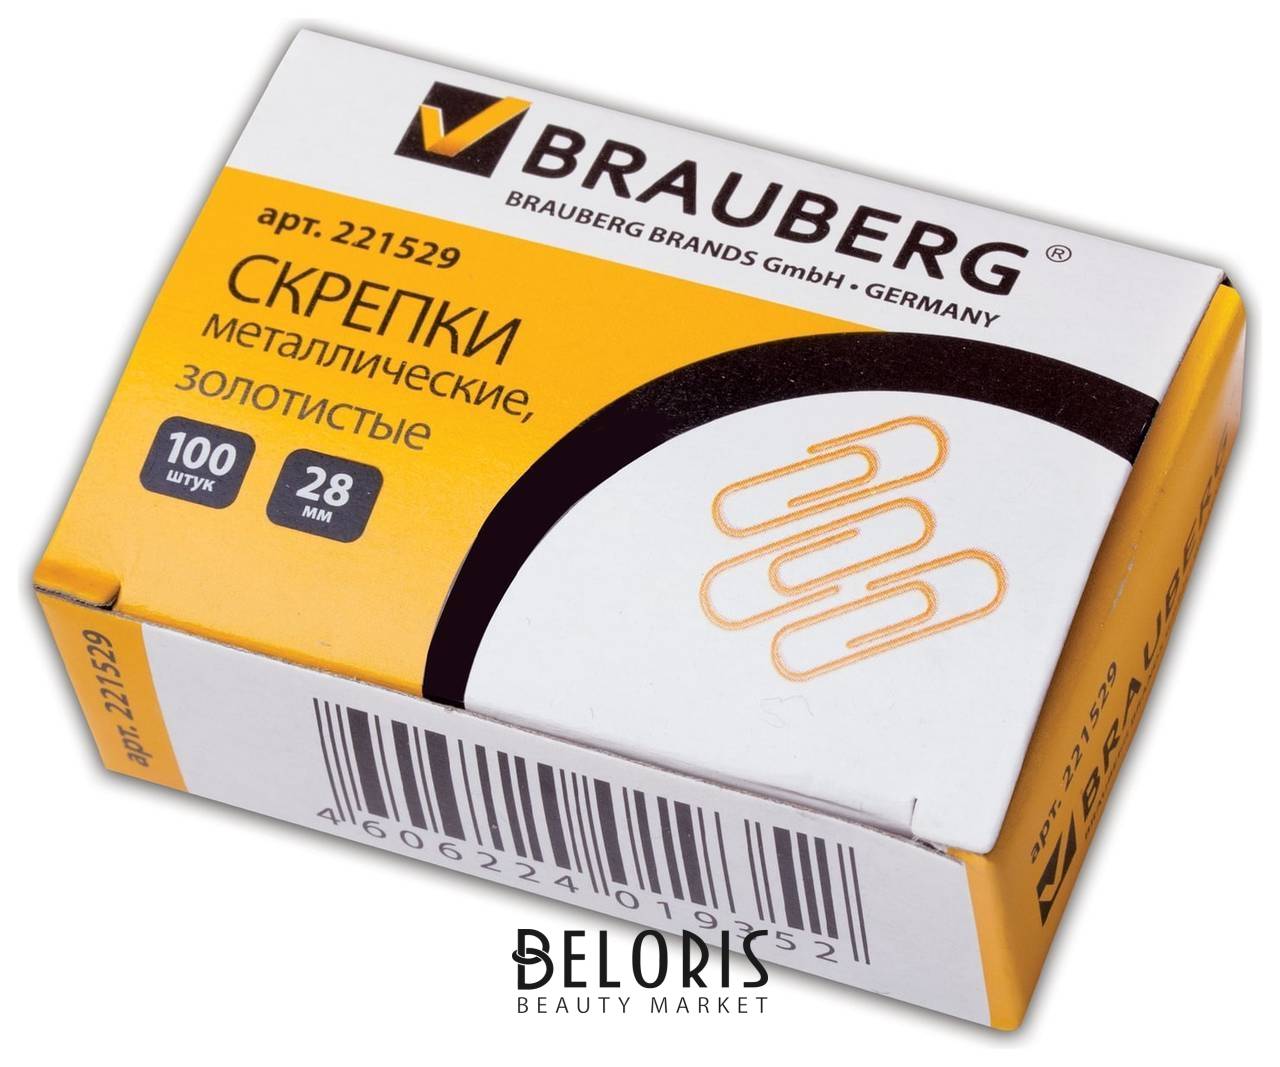 Скрепки Brauberg, 28 мм, золотистые, 100 шт., в картонной коробке Brauberg